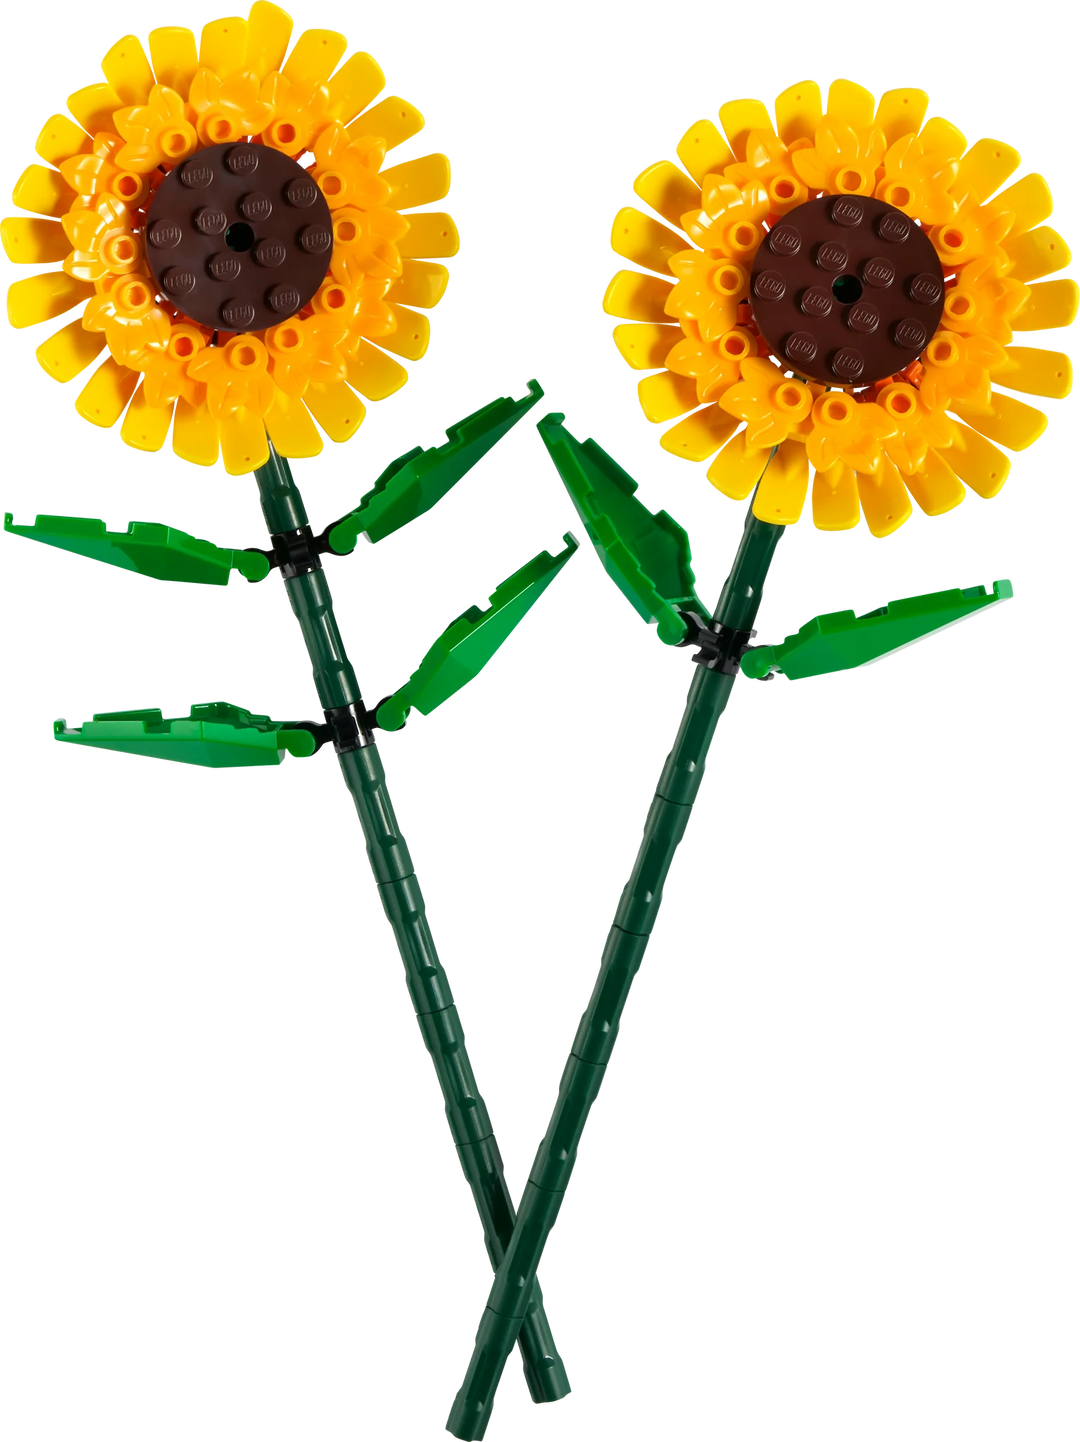 LEGO® Icons: Sunflowers